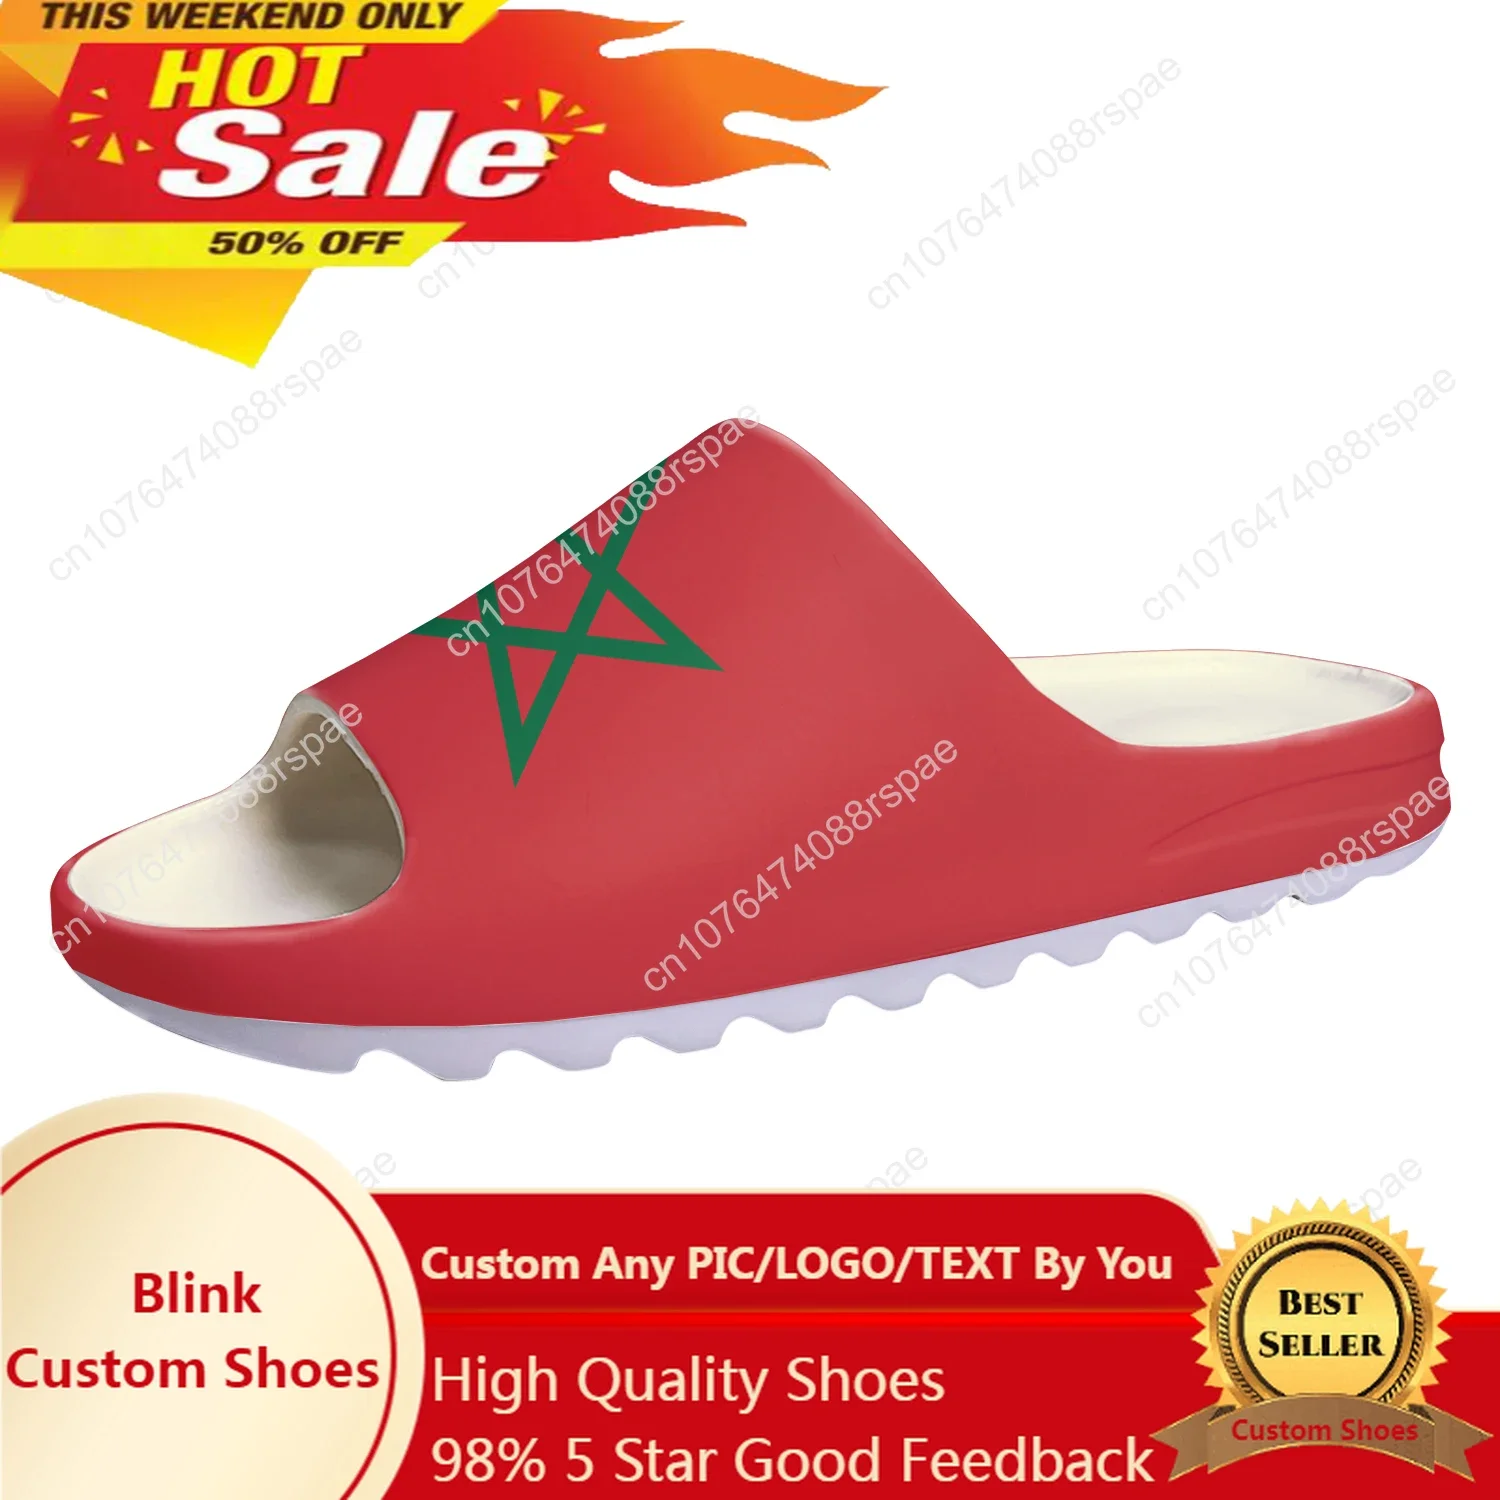 

Сандалии с марокканским флагом на мягкой подошве, сабо для дома, обувь для воды, для мужчин и женщин, подростков, для ванной комнаты, марокканские сандалии под заказ